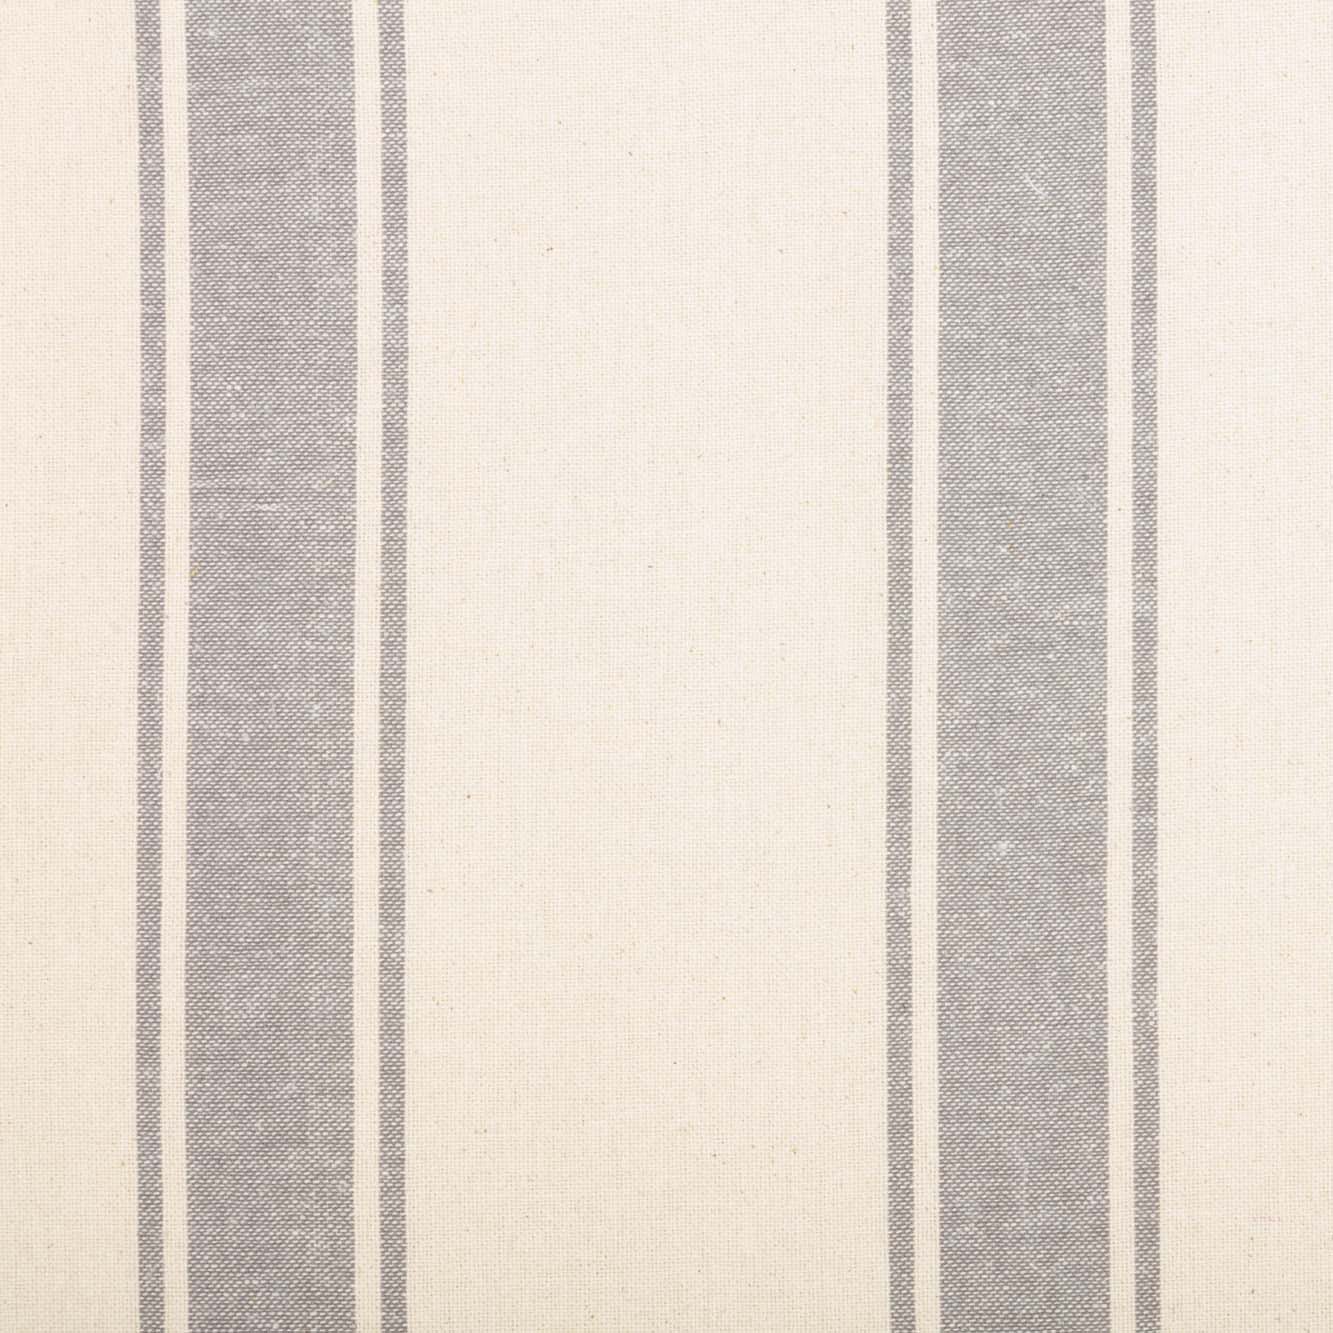 69967-Grace-Grain-Sack-Stripe-Prairie-Long-Panel-Set-of-2-84x36x18-image-7